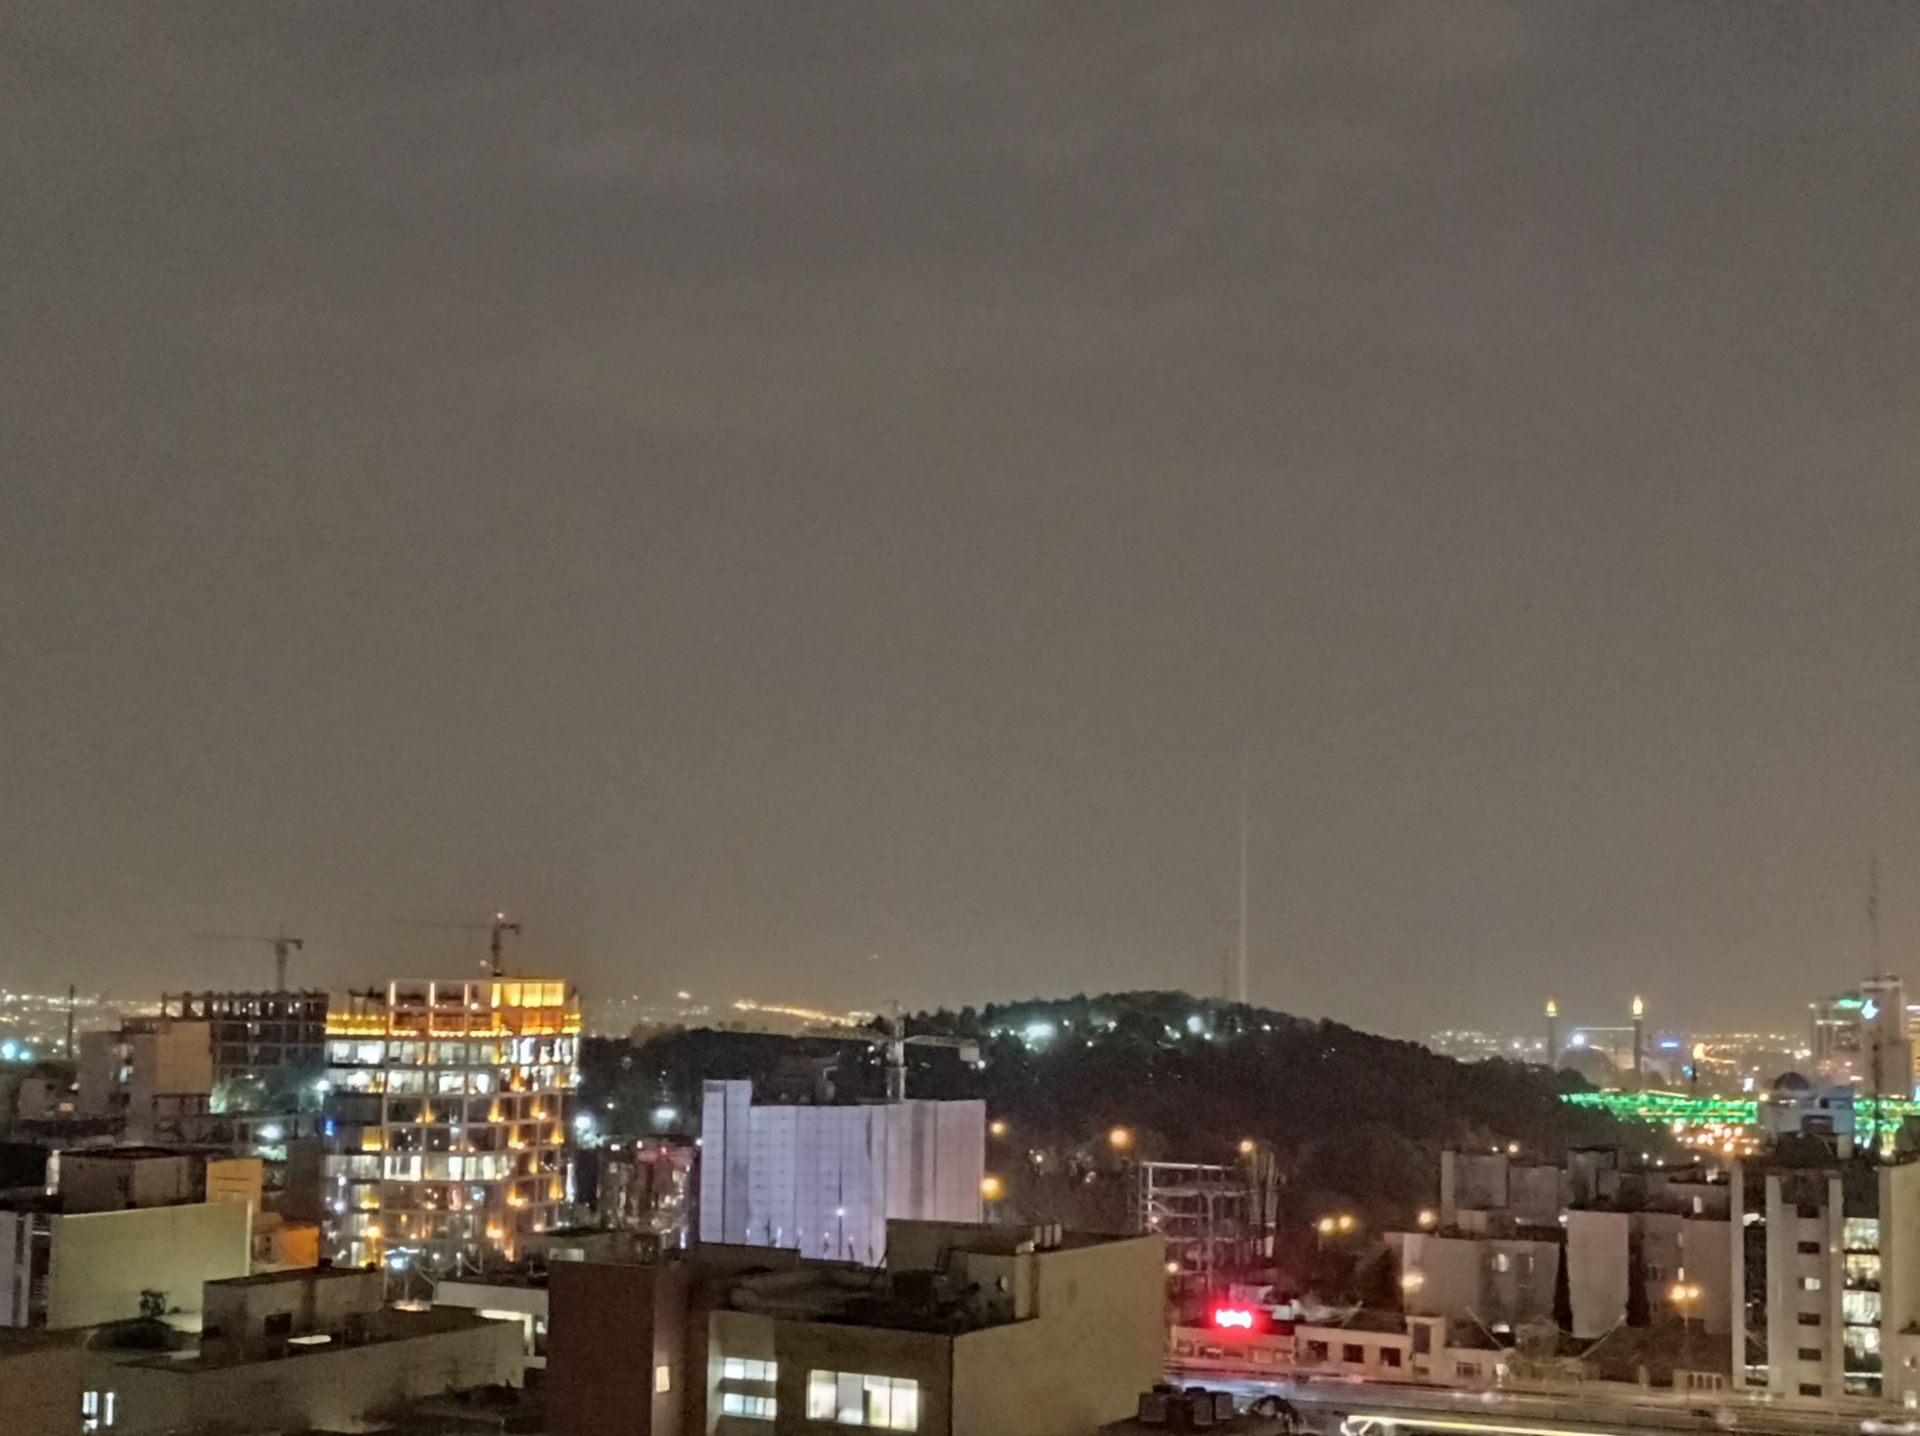 نمونه عکس 2x دوربین اصلی ردمی نوت ۹ در تاریکی - منظره تهران در شب